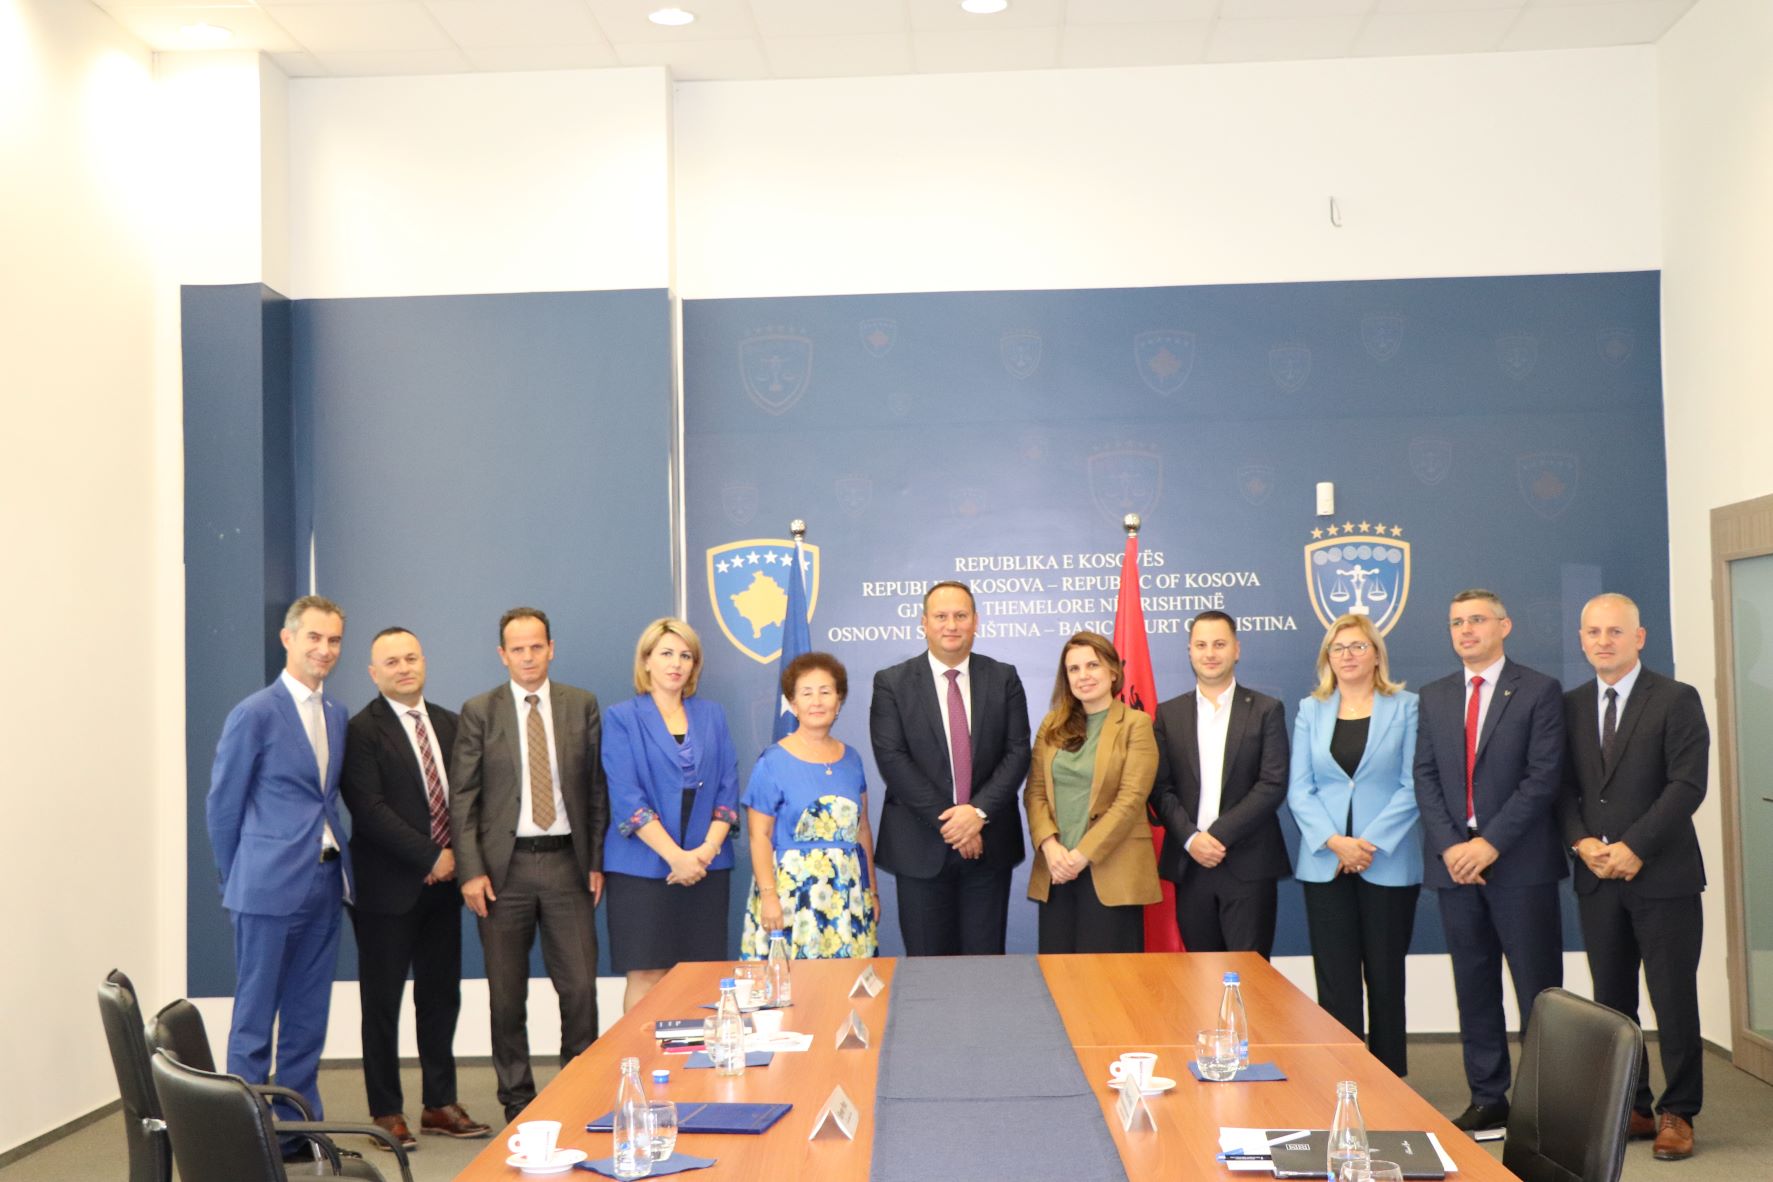 Krerët e sistemit gjyqësor të Kosovës presin në takim delegacionin nga Këshilli i Lartë Gjyqësor i Shqipërisë